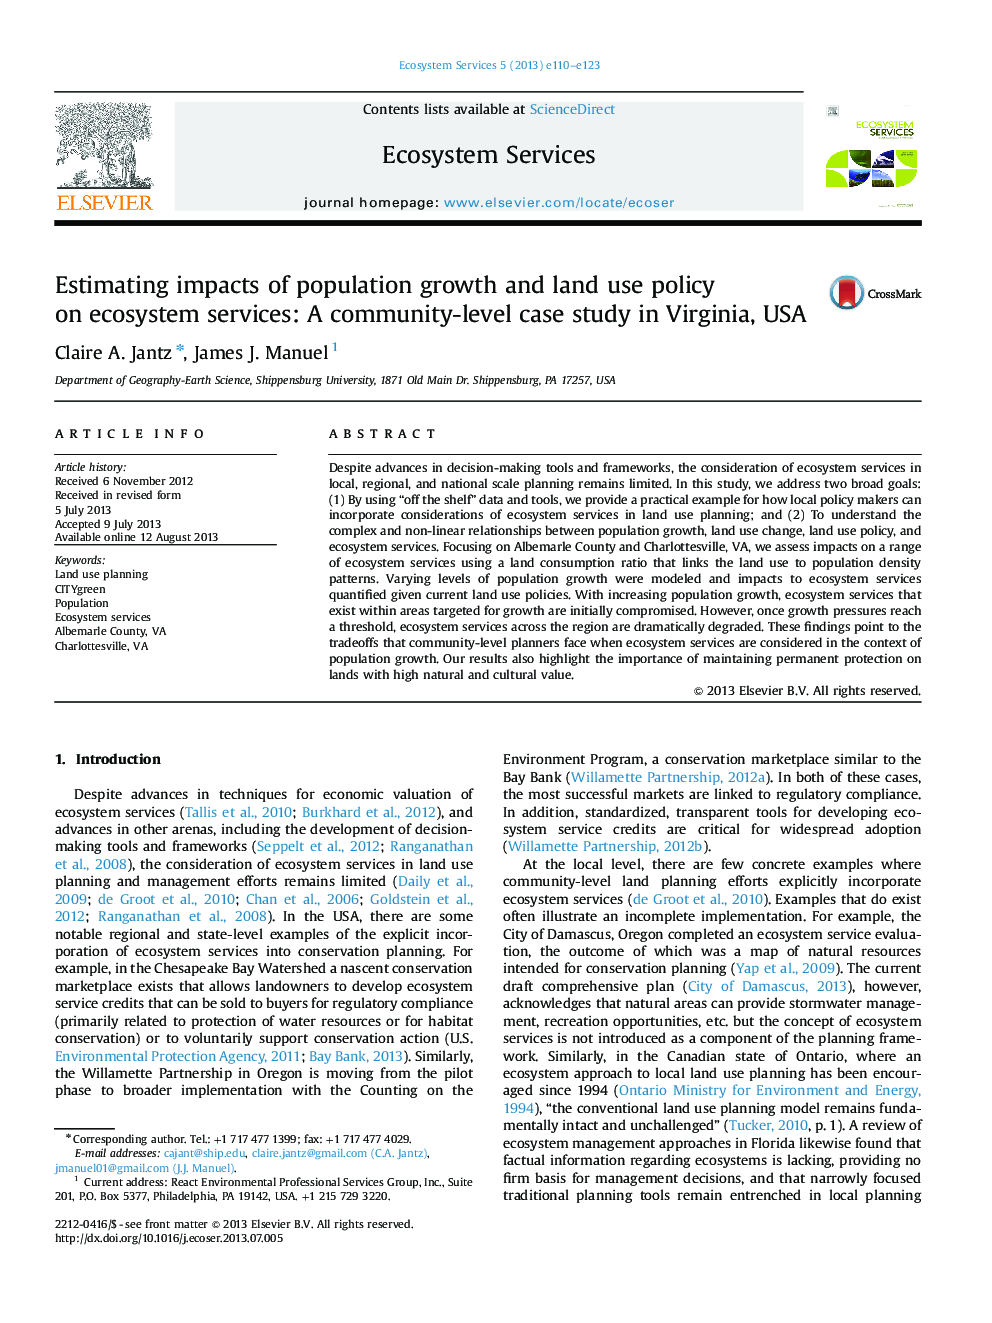 برآورد اثرات رشد جمعیت و سیاست استفاده از زمین در خدمات اکوسیستم: مطالعه موردی در سطح محلی در ویرجینیا، ایالات متحده آمریکا 